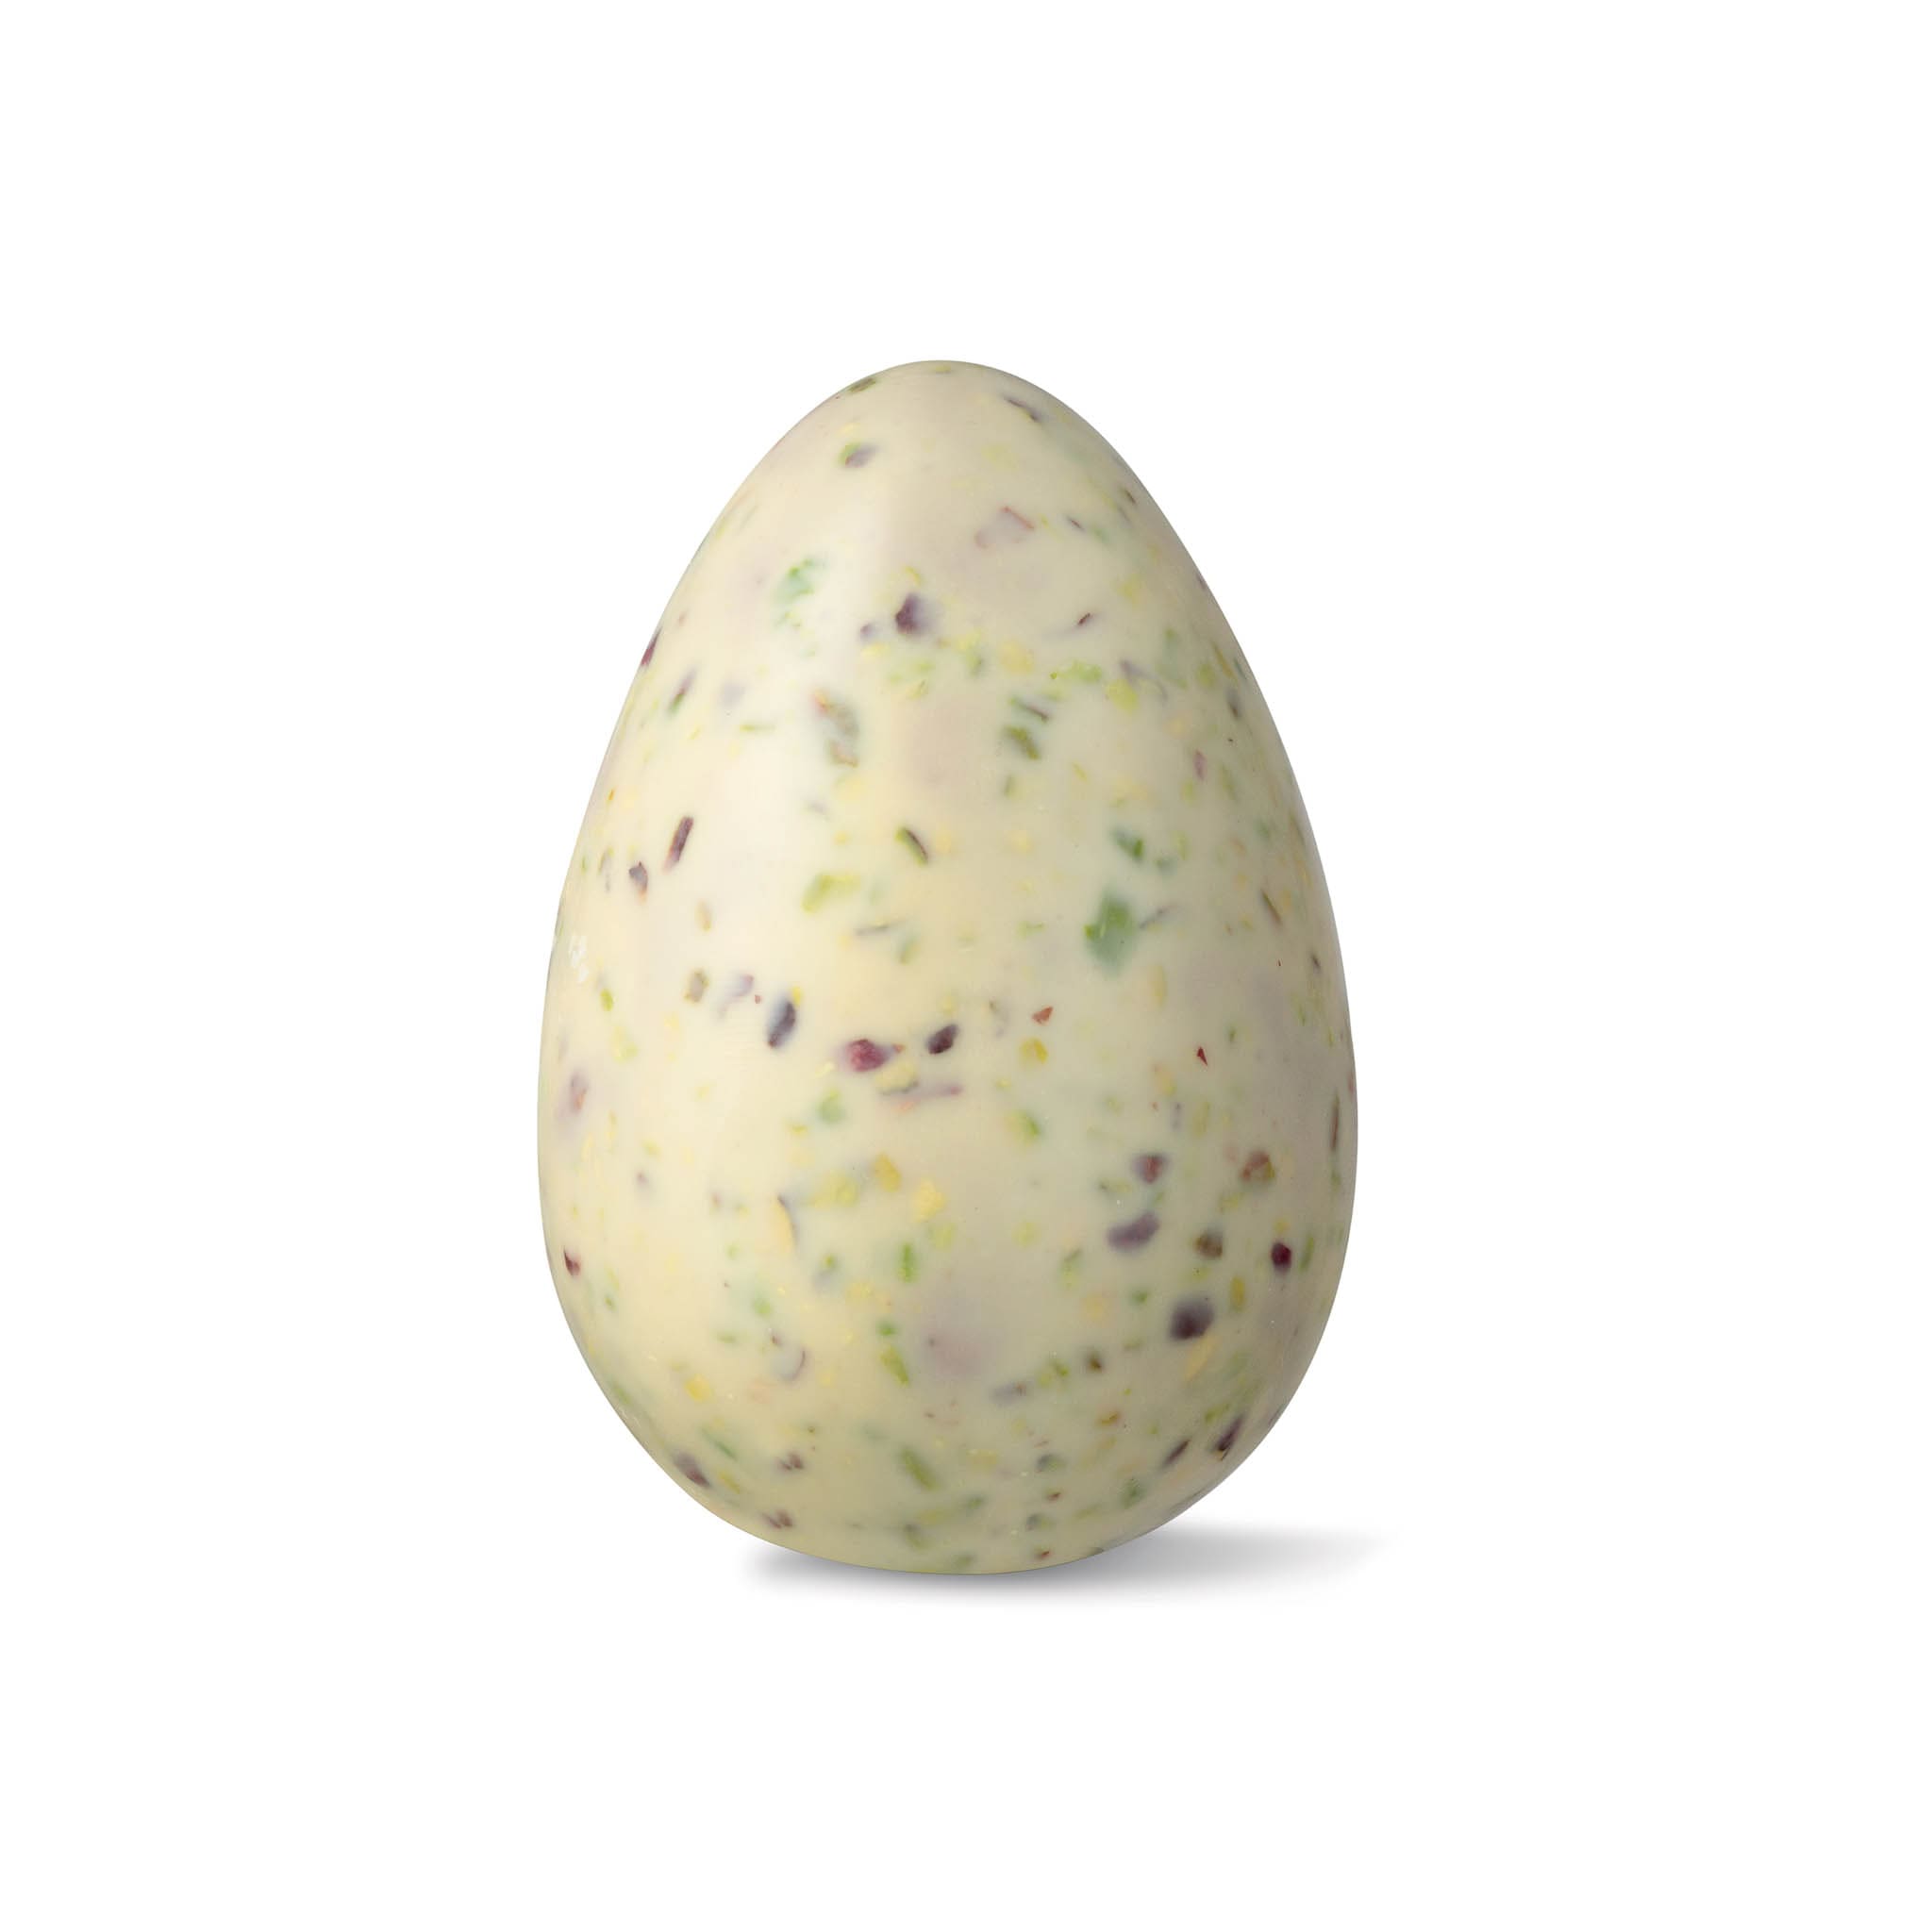 La Perla di Torino Pistachio & Raspberry Filled Easter Egg, 100g